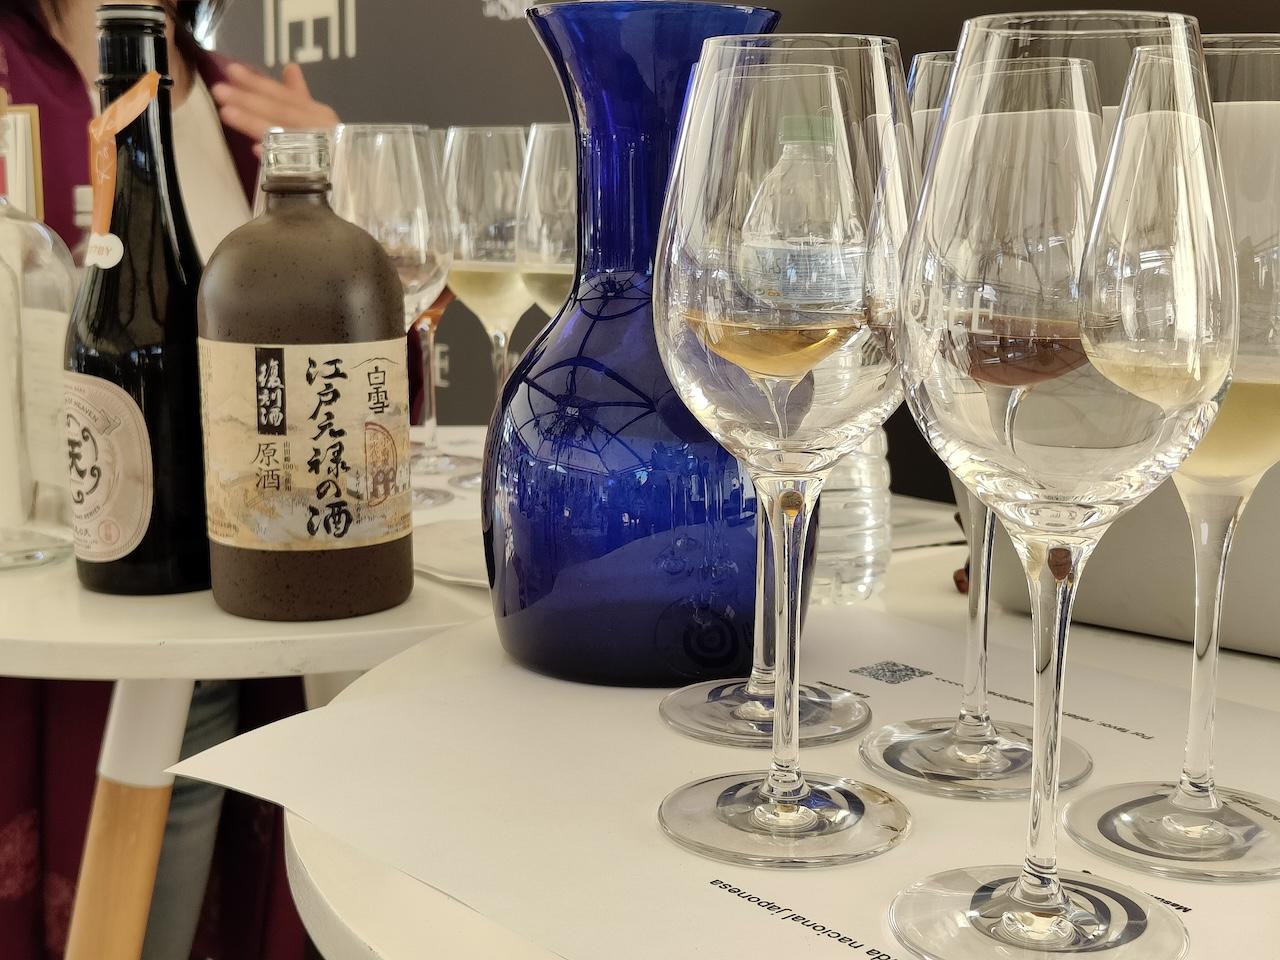 Vinoble potencia su carácter internacional gracias al hermanamiento entre el Sake japonés y los Vinos de Jerez